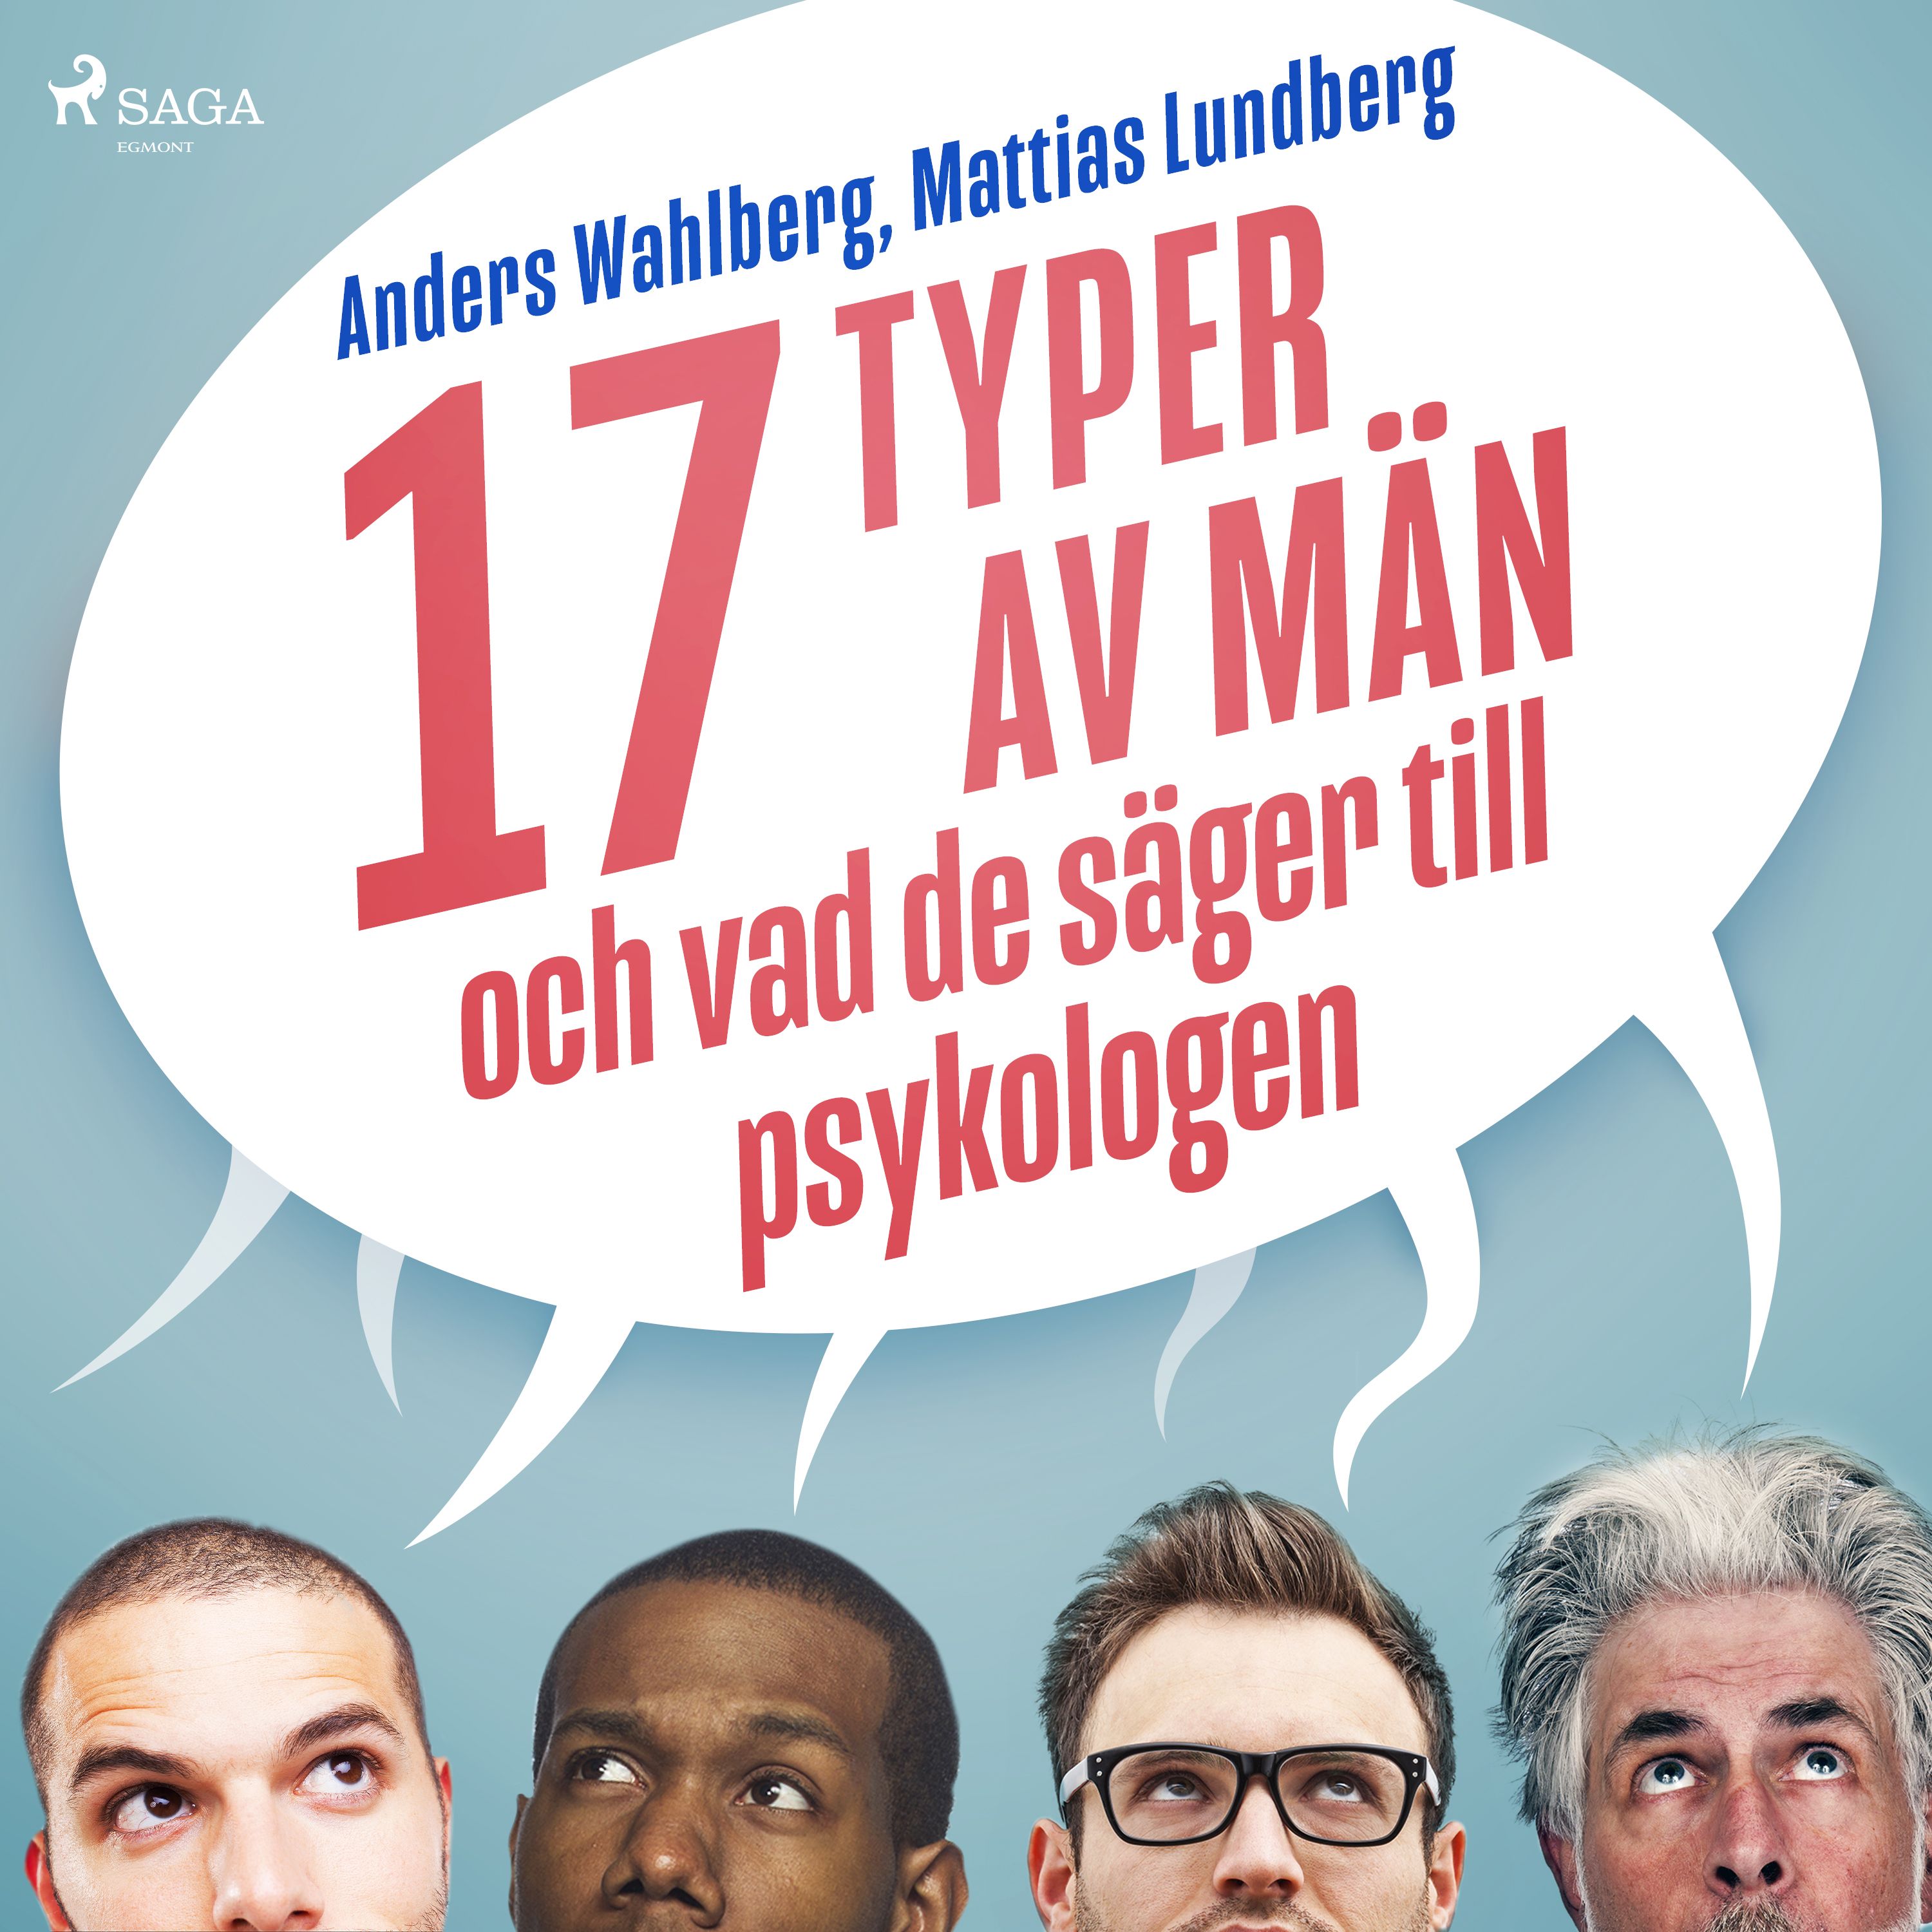 17 typer av män - och vad de säger till psykologen, ljudbok av Mattias Lundberg, Anders Wahlberg